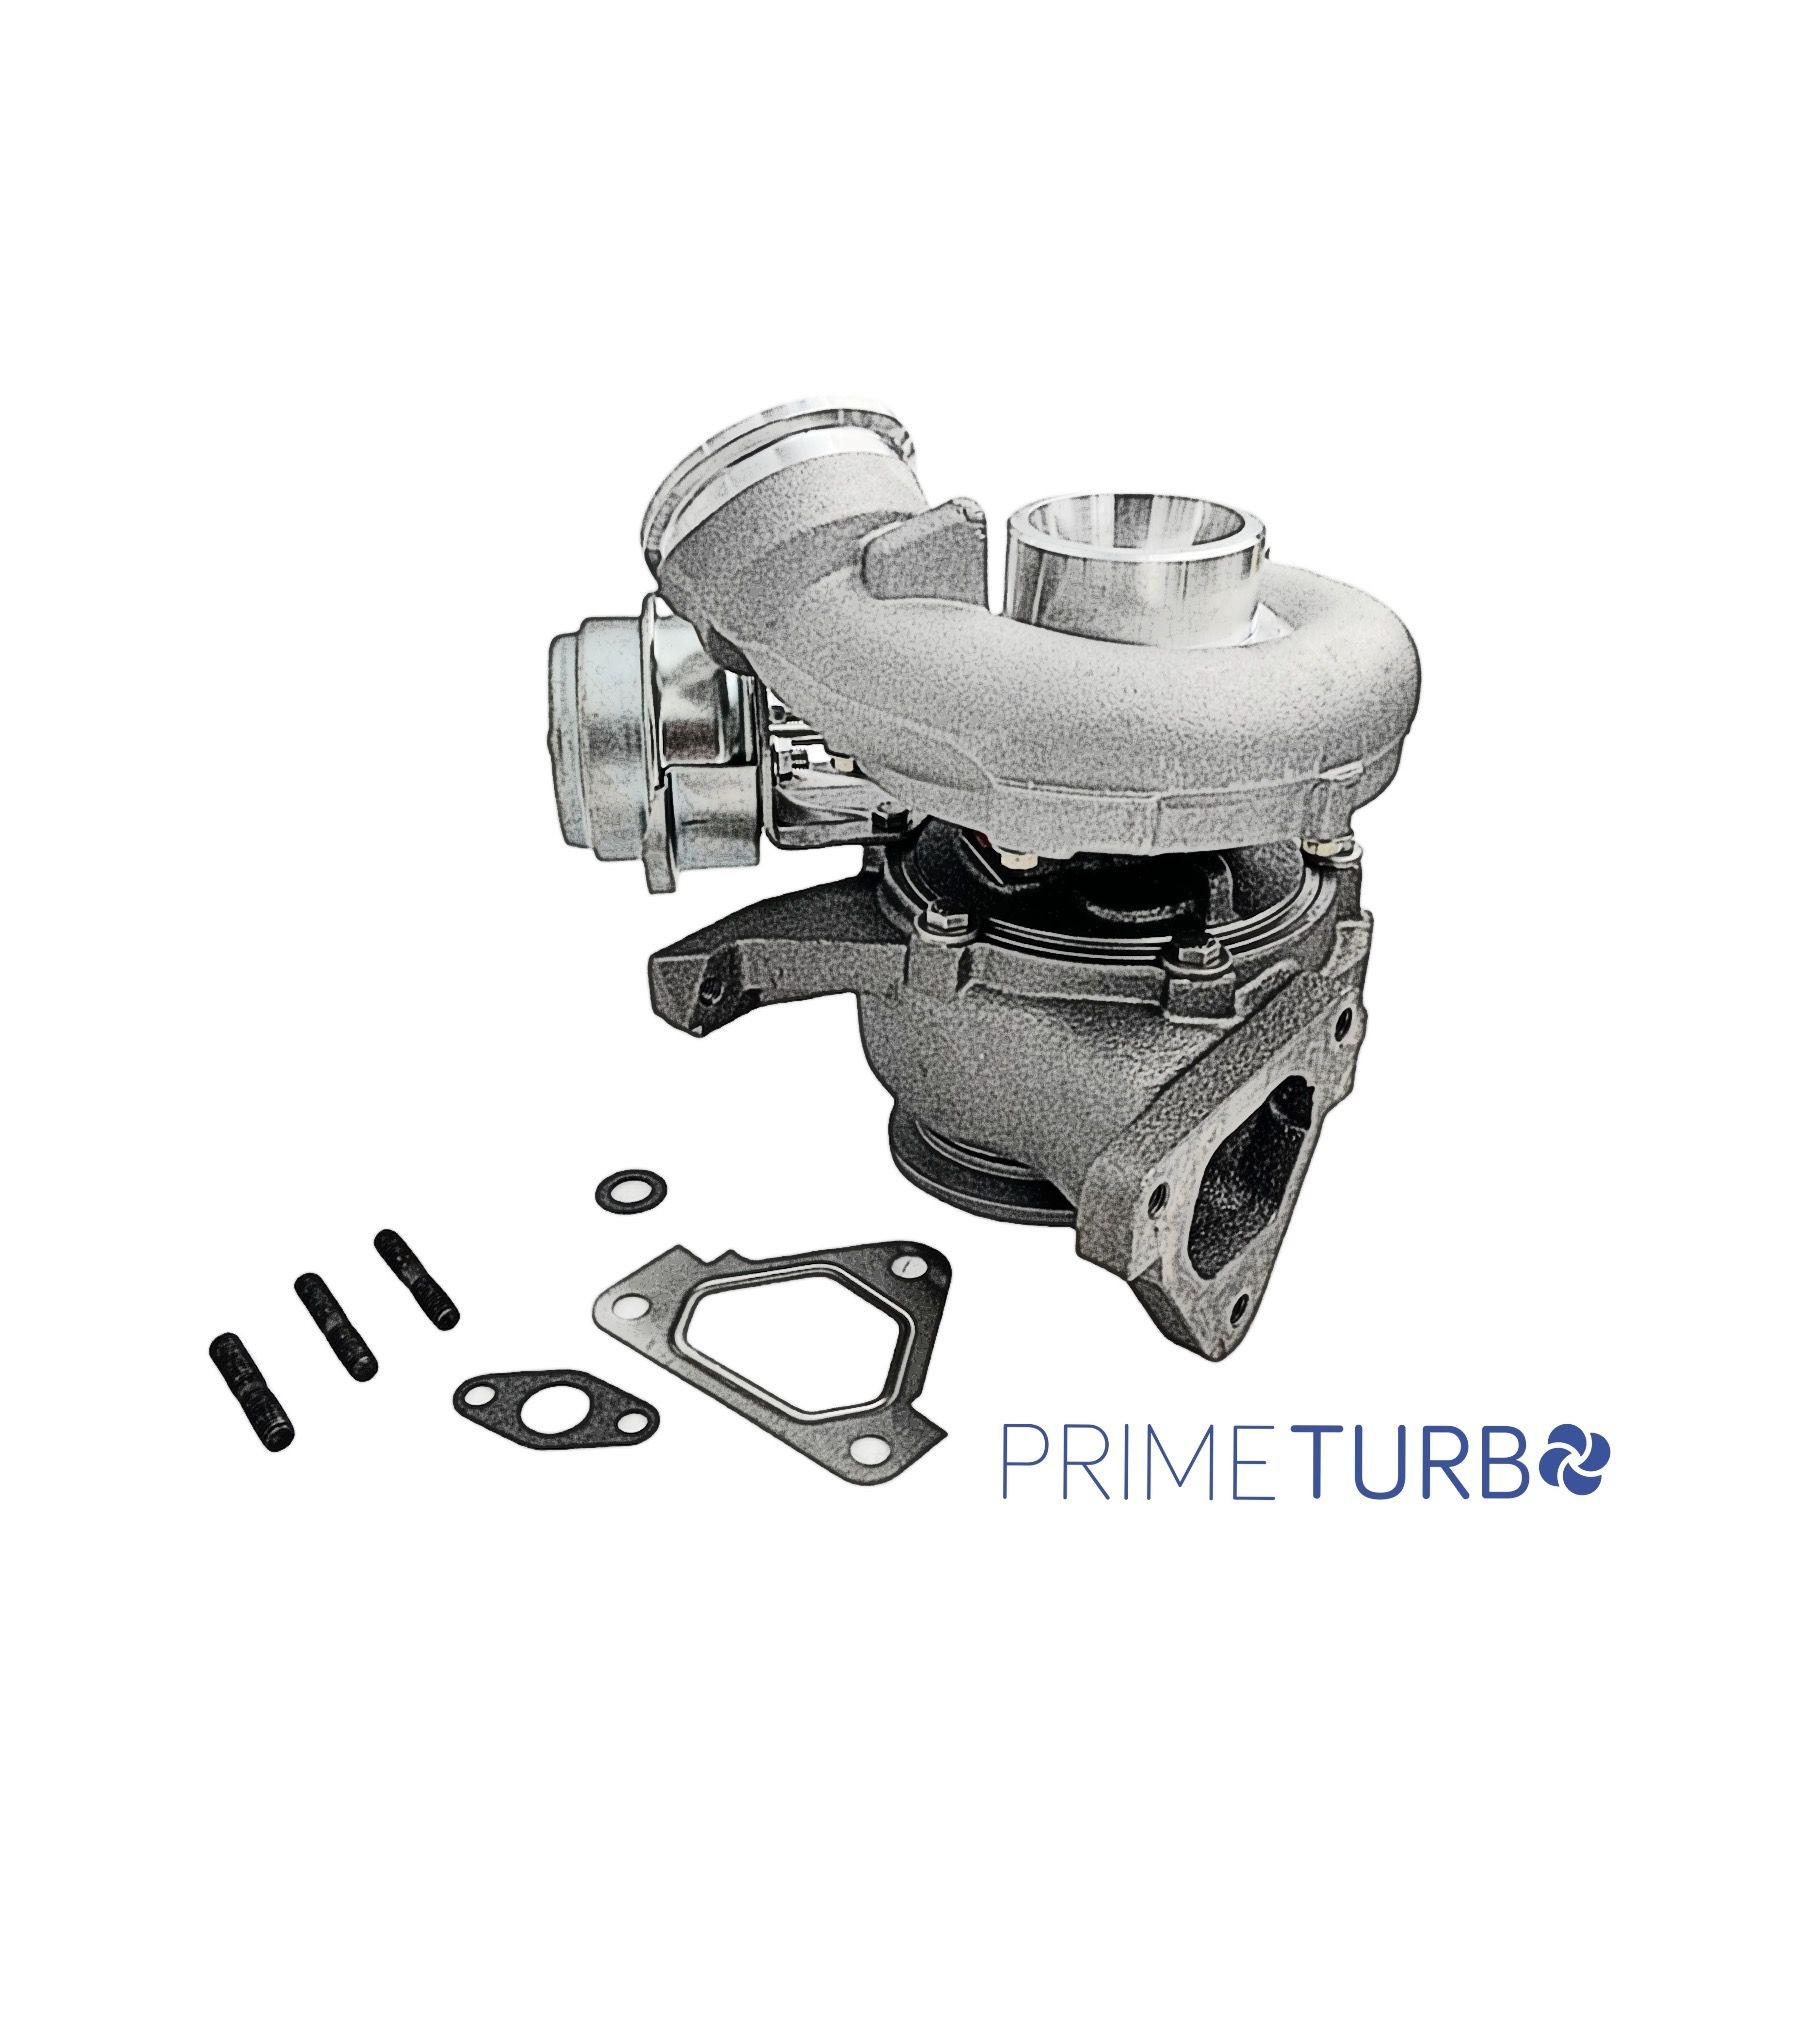 Prime Turbo Turbocharger-0